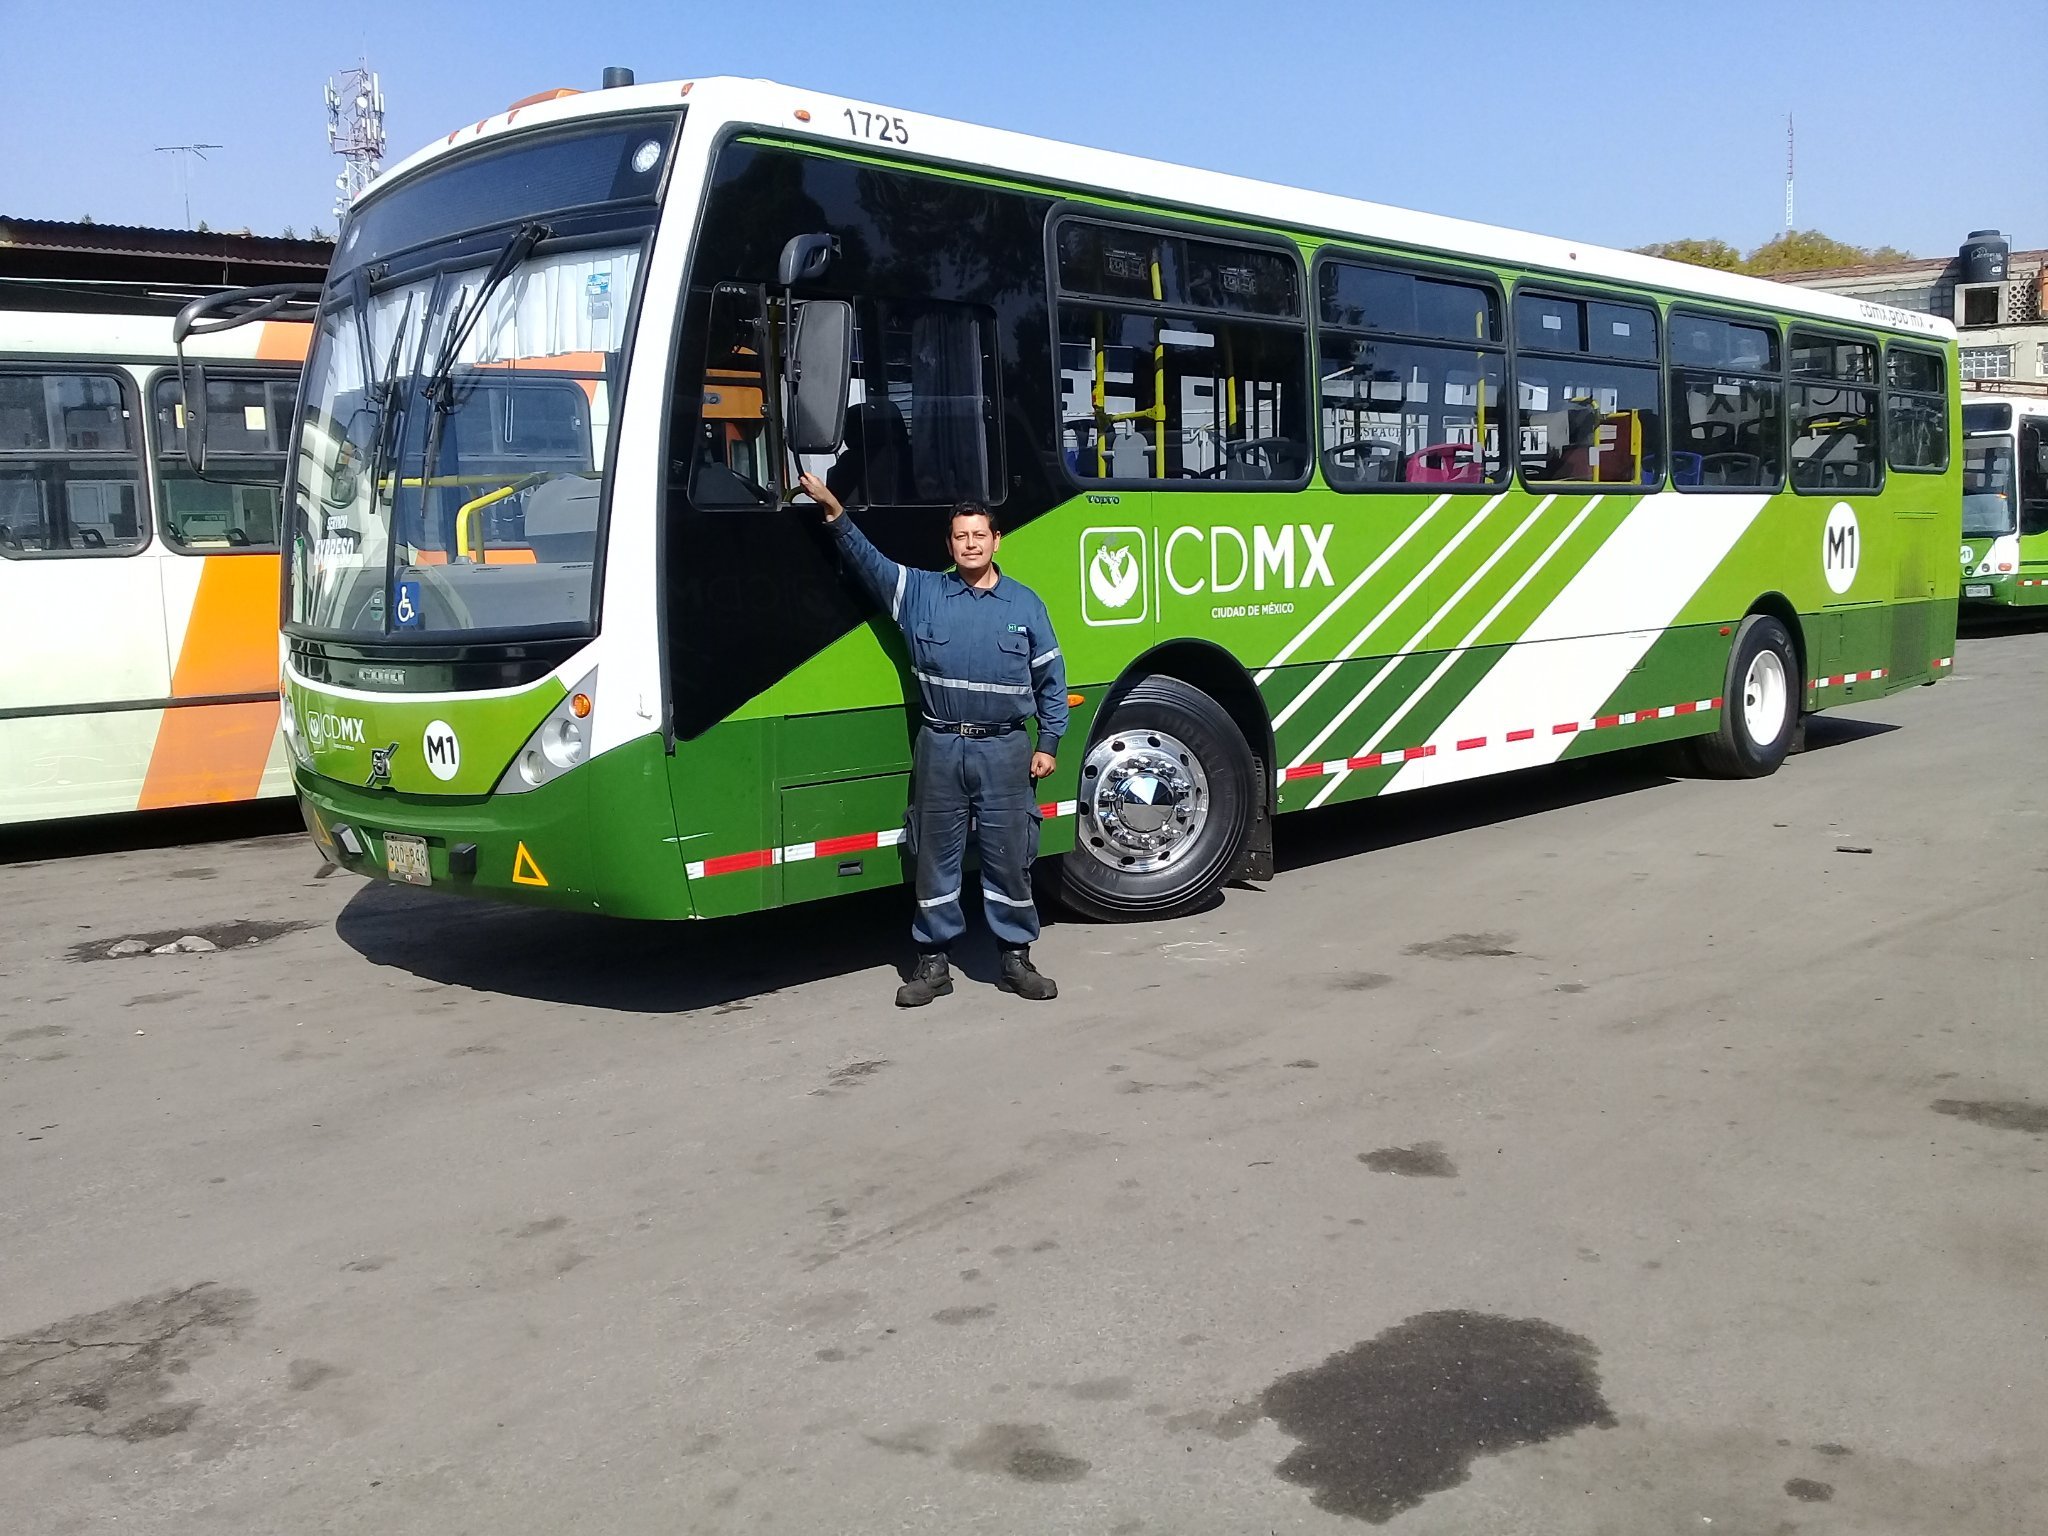 Oficial Mecánico en el Módulo-07 (Palestina) de la Red de Transporte de Pasajeros de la CDMX.